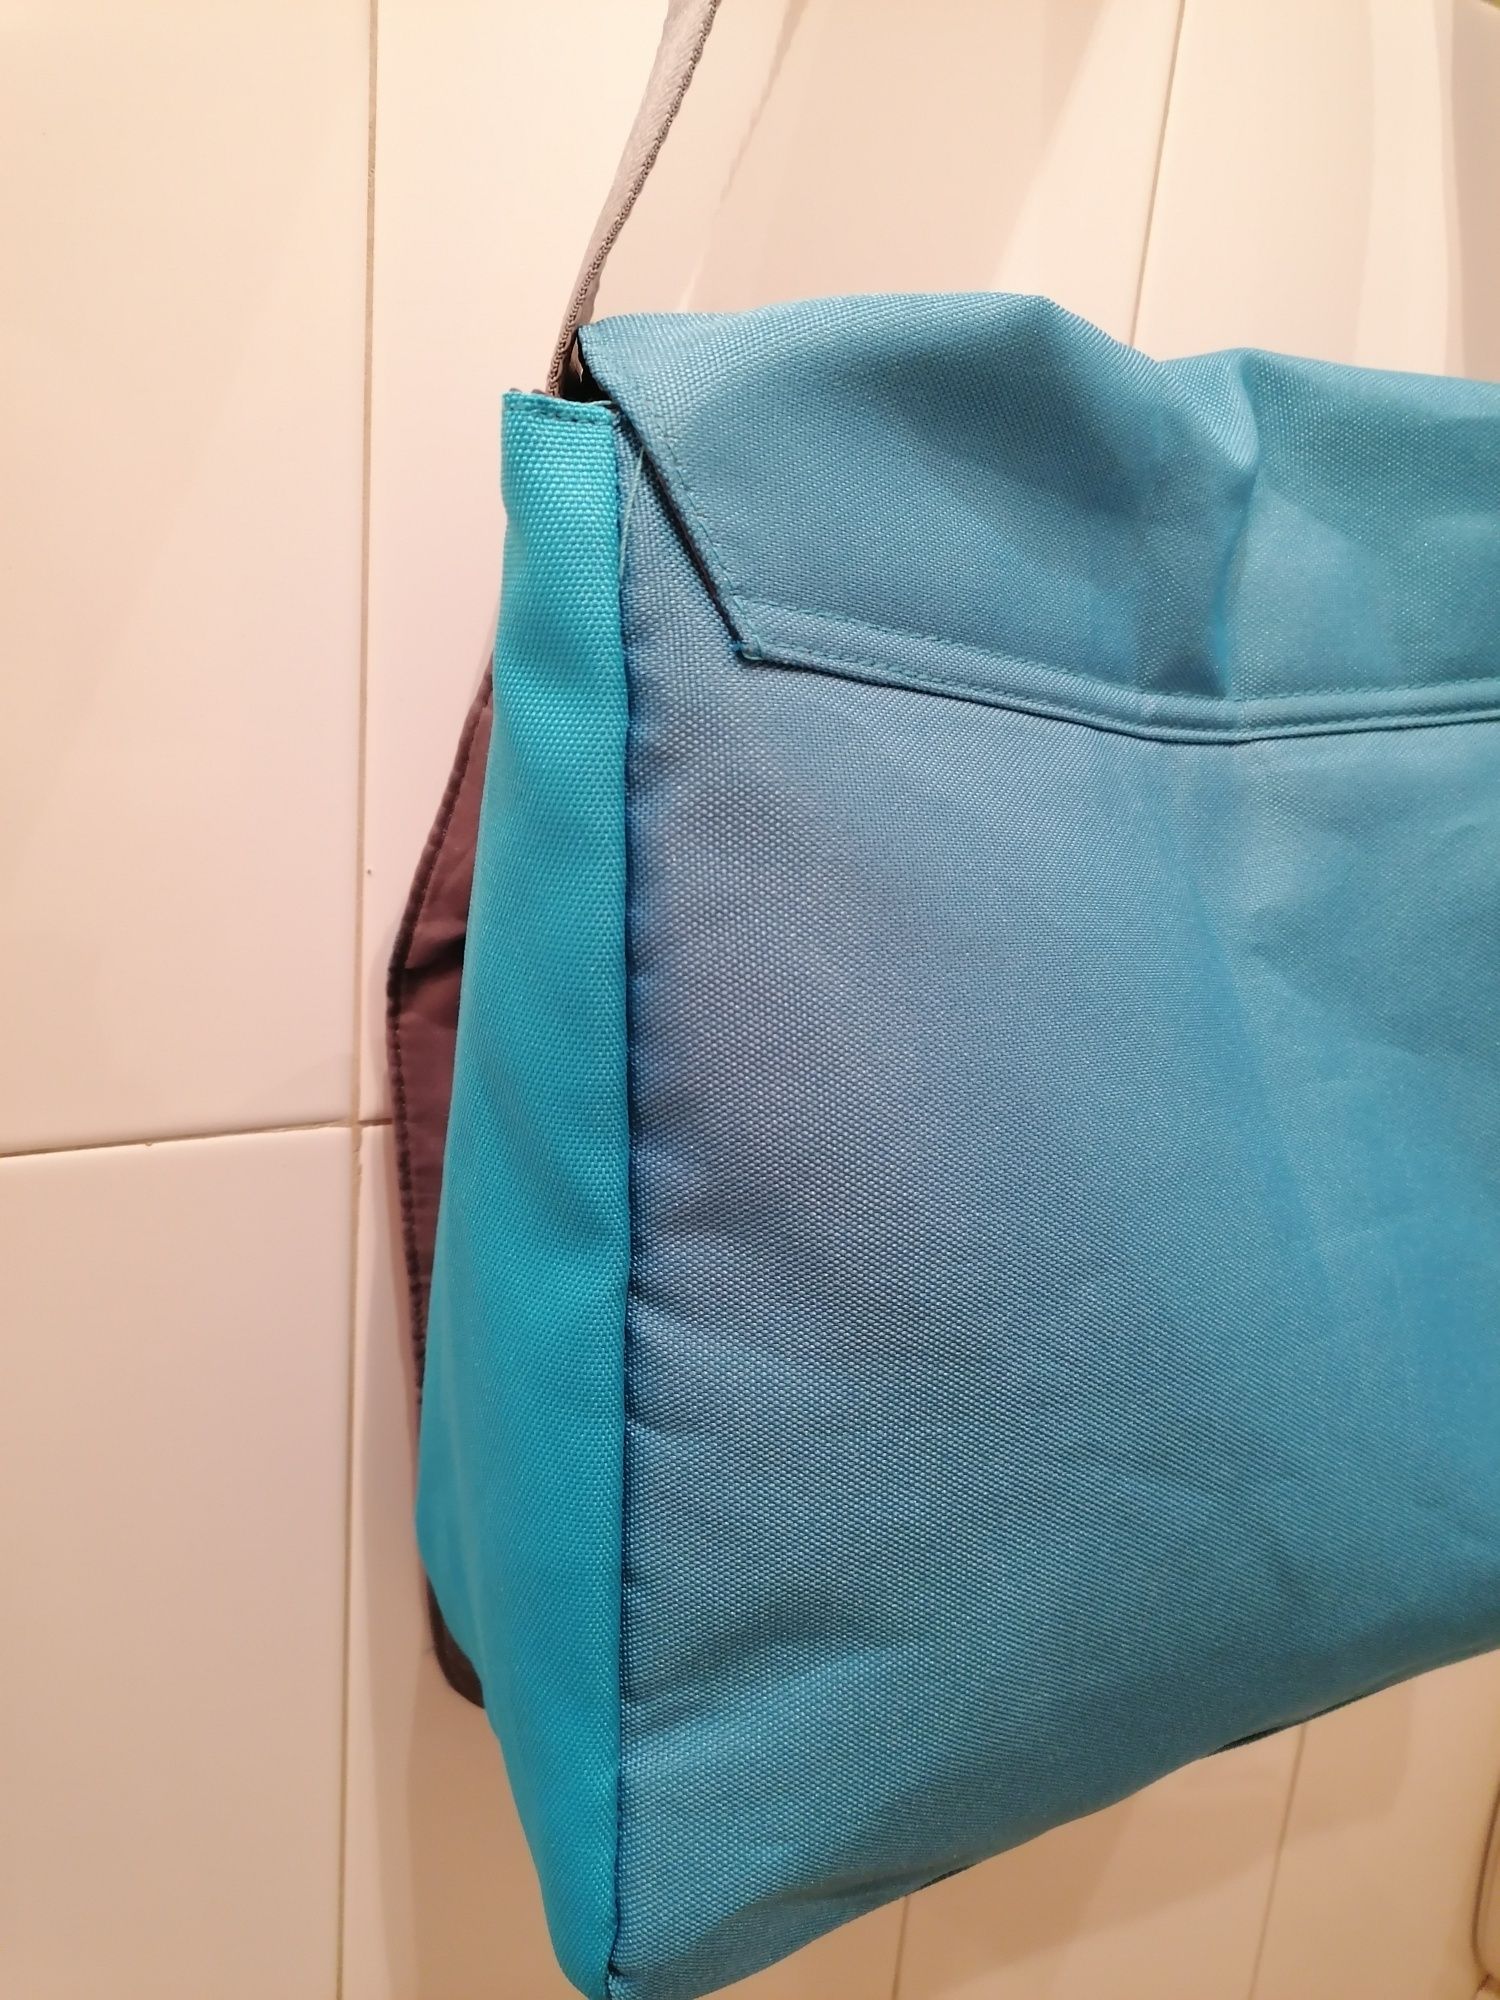 Mala saco à tiracolo, da Calvin Klein, tem um bolso com fecho na aba